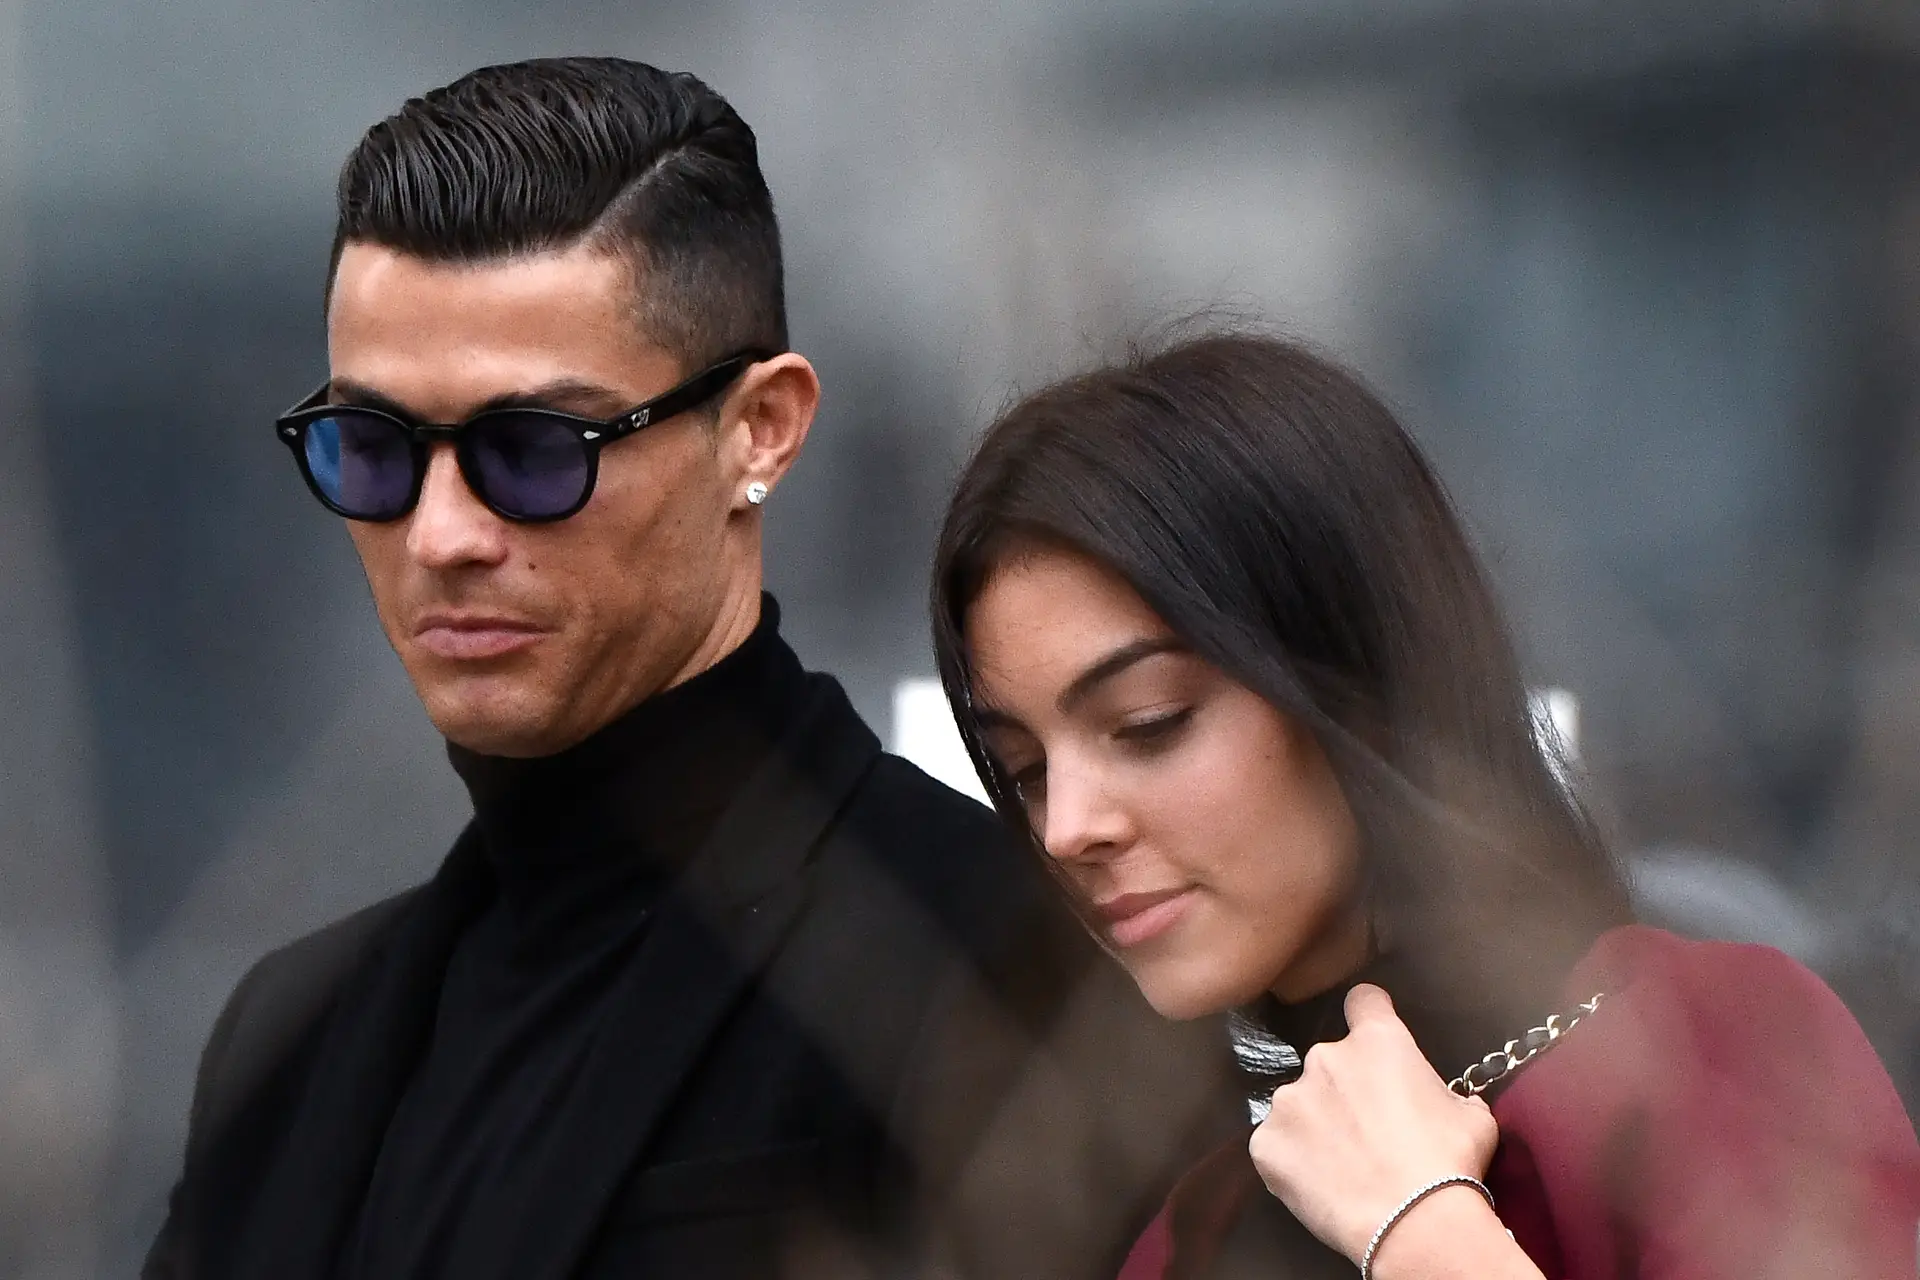 Morreu um dos gémeos de Cristiano Ronaldo e Georgina no parto